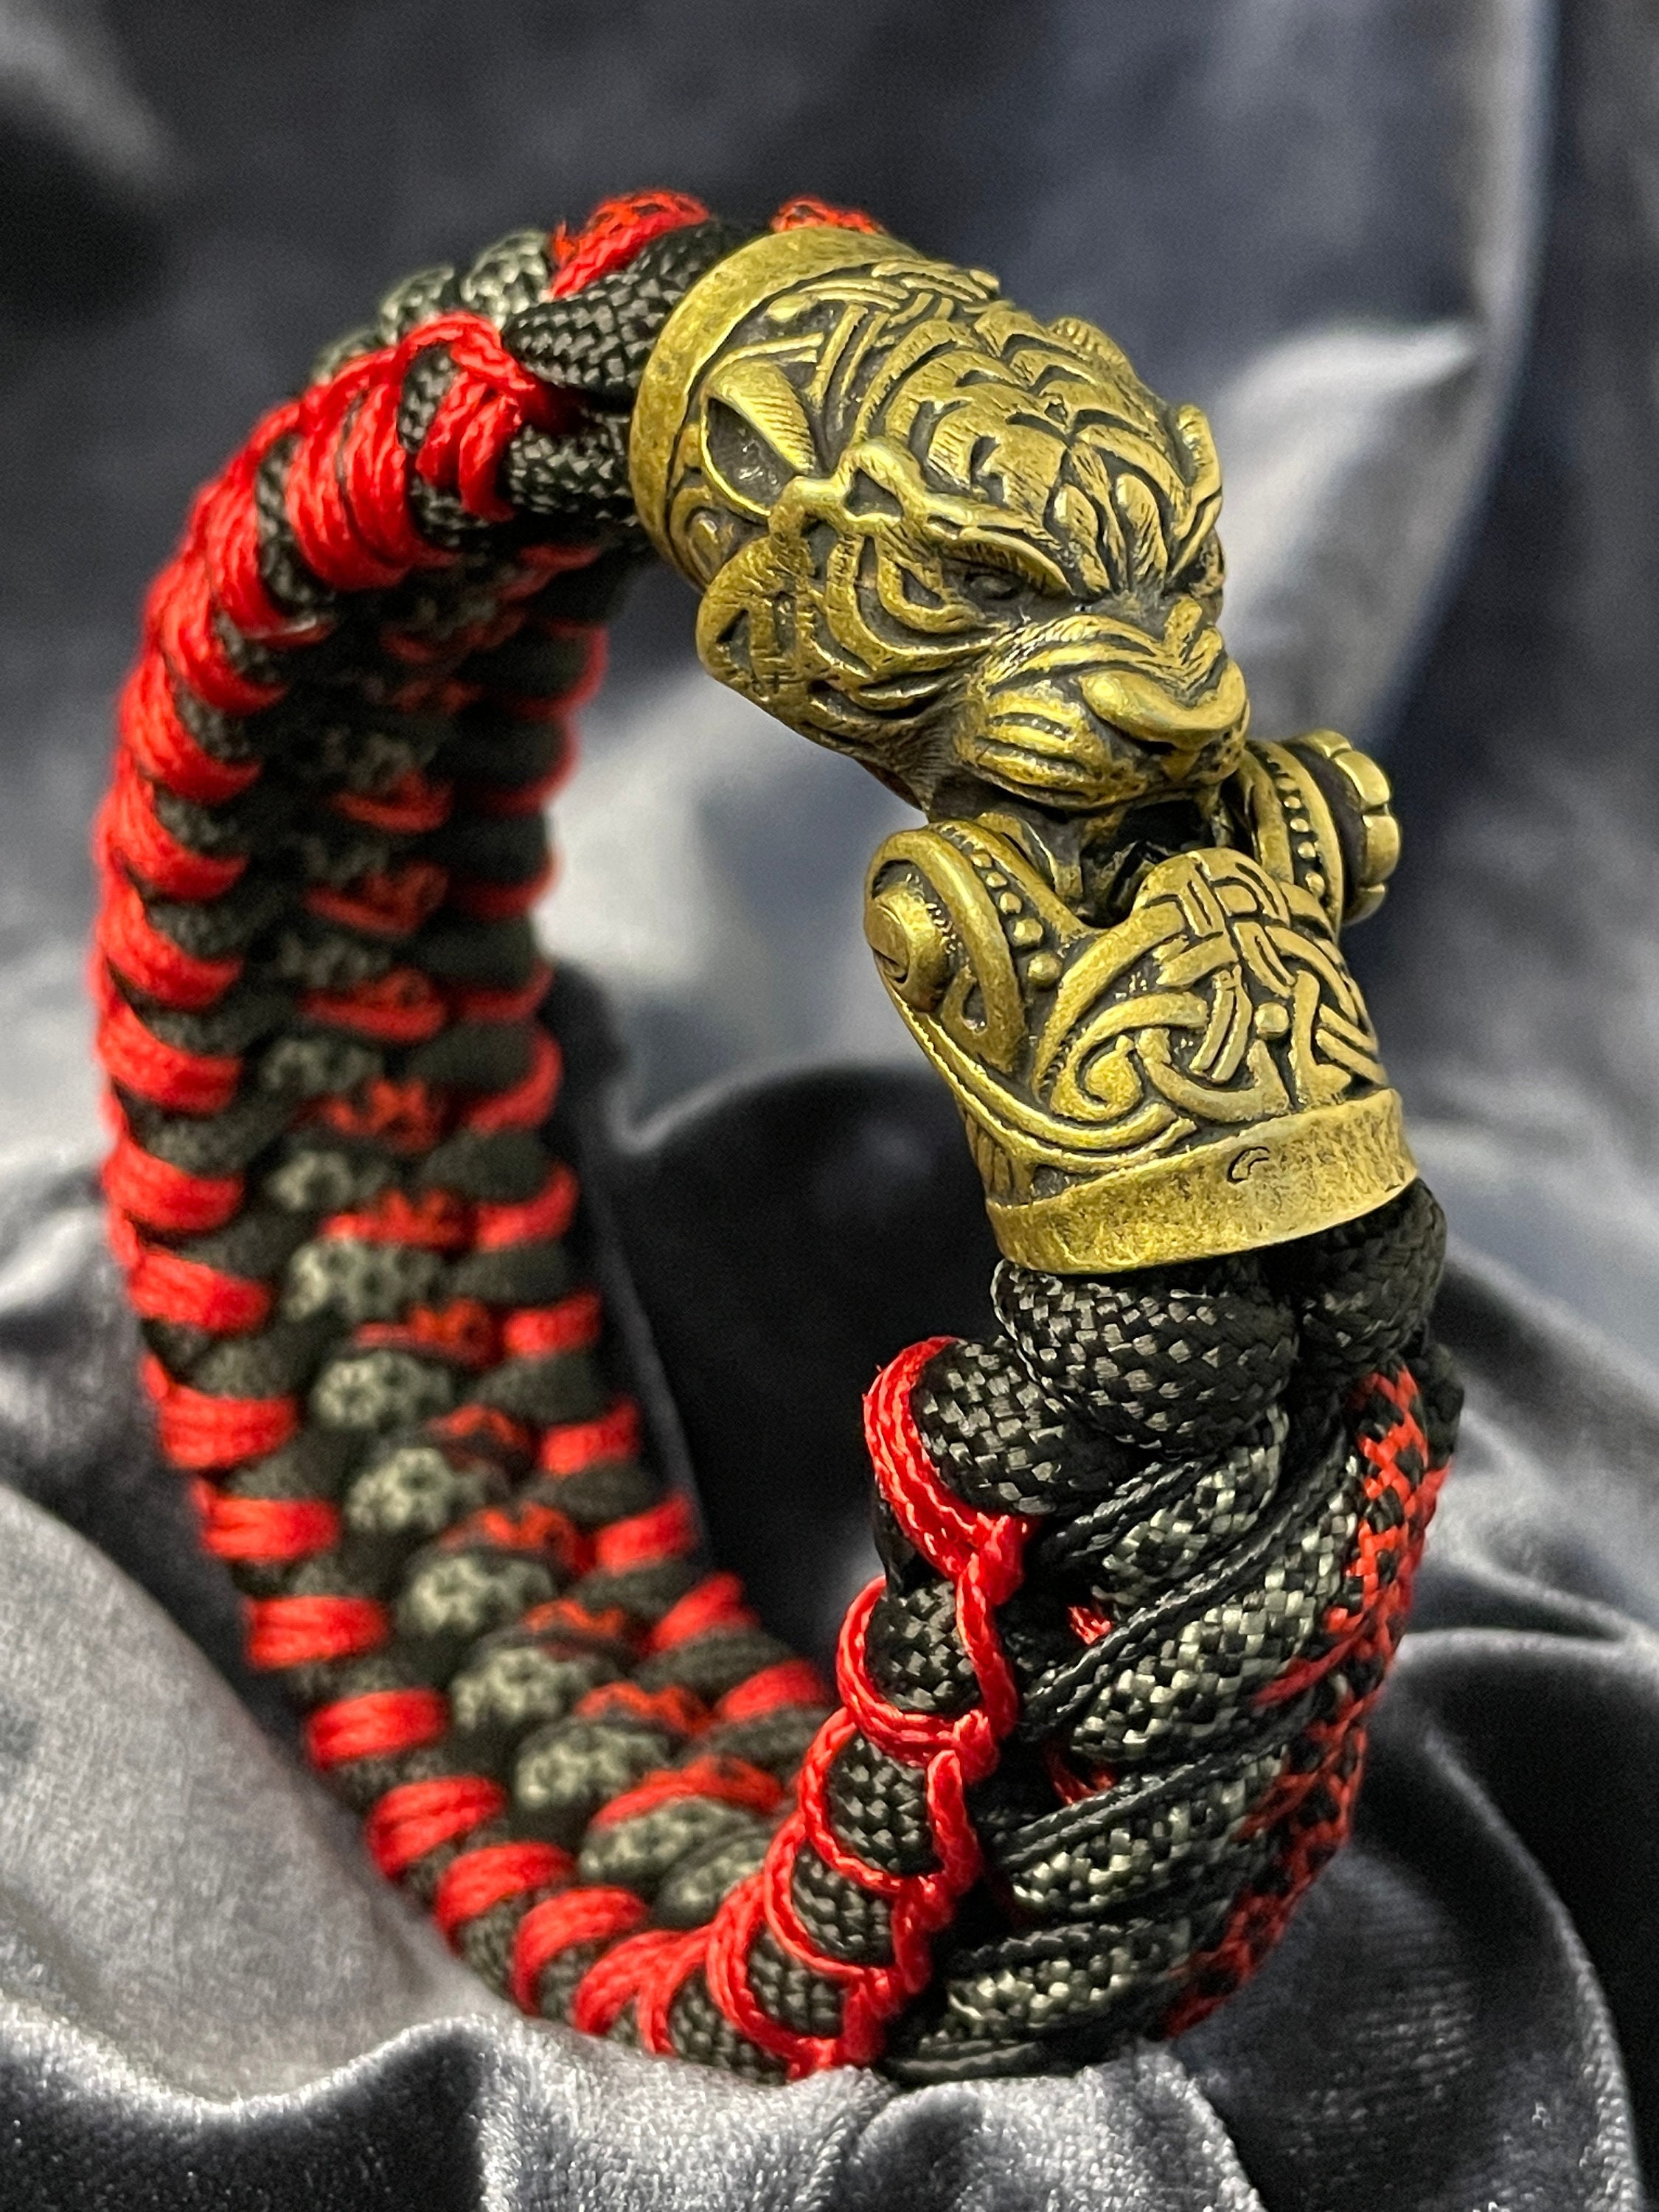 Bear head shackle, custom clasp for paracord bracelet